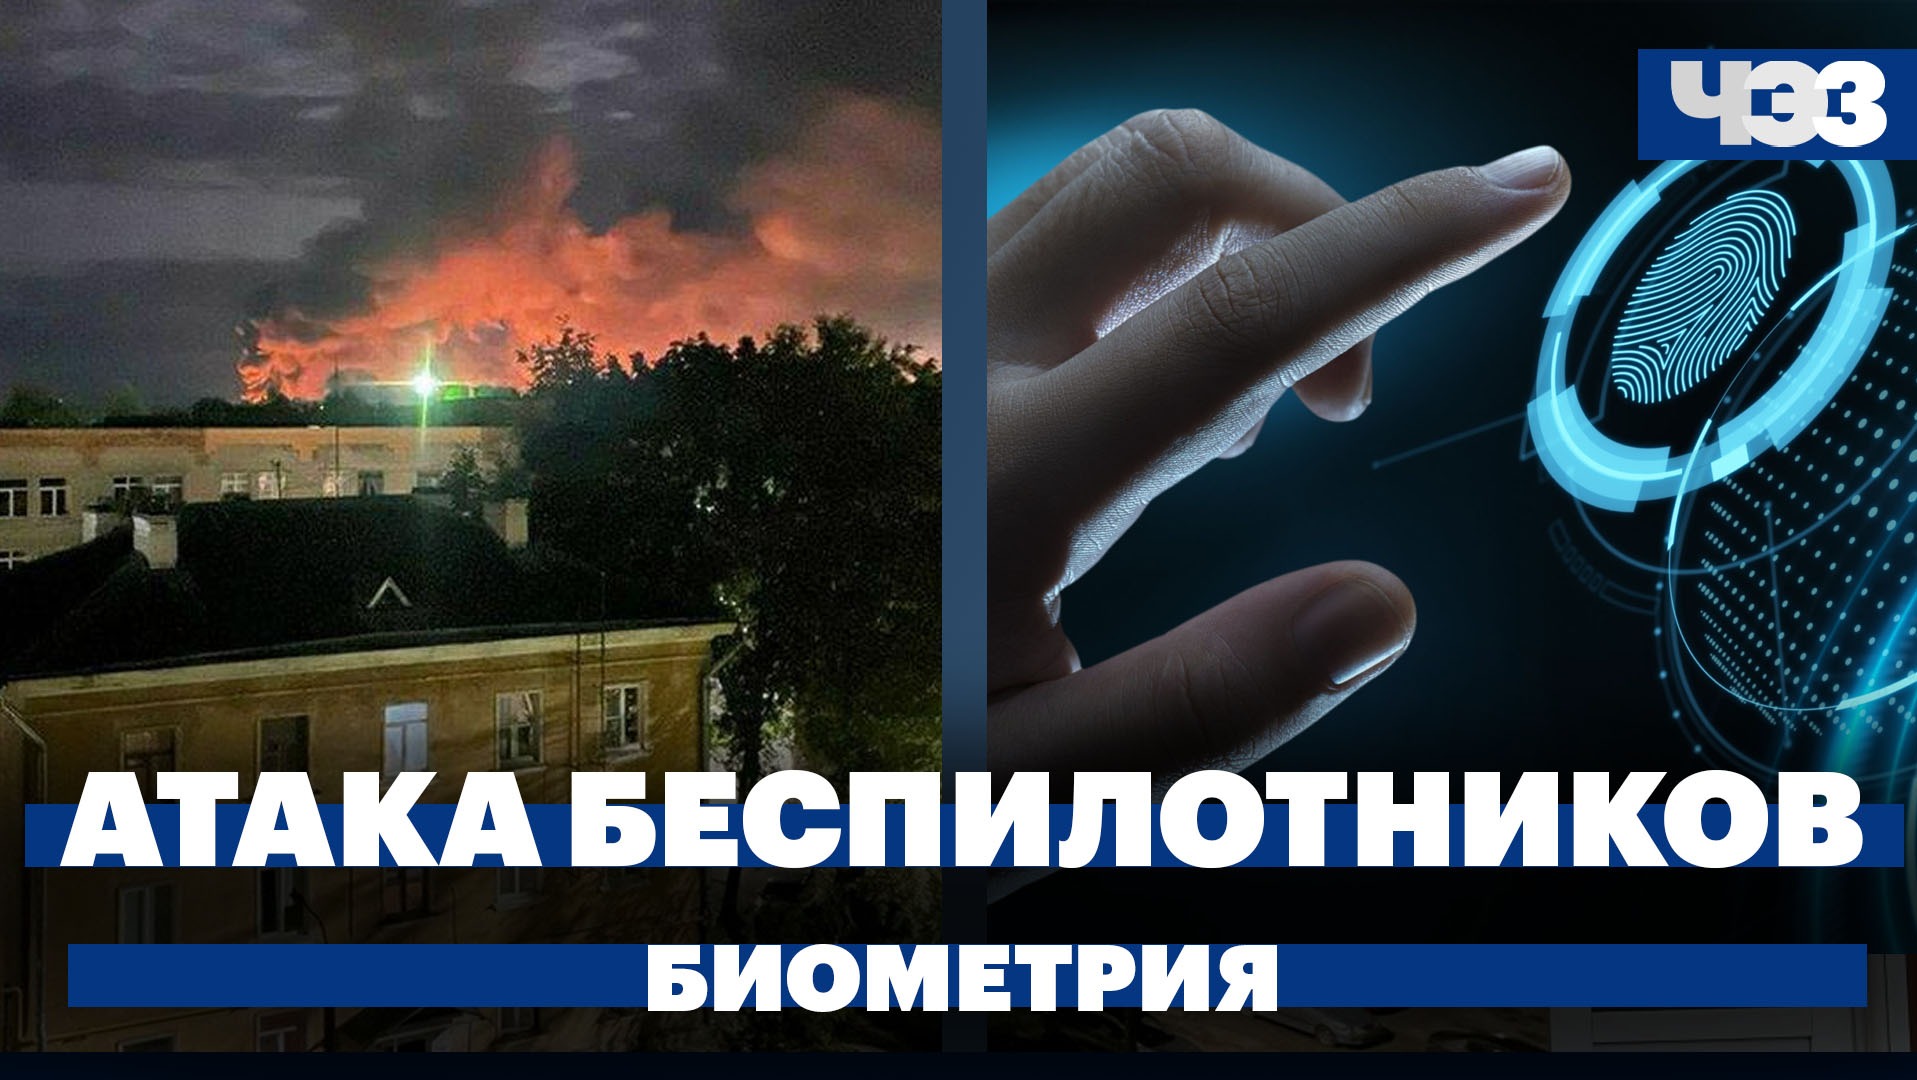 Крупнейшая атака дронов на российские регионы, лесной пожар в Геленджике, слухи о дедлайне биометрии